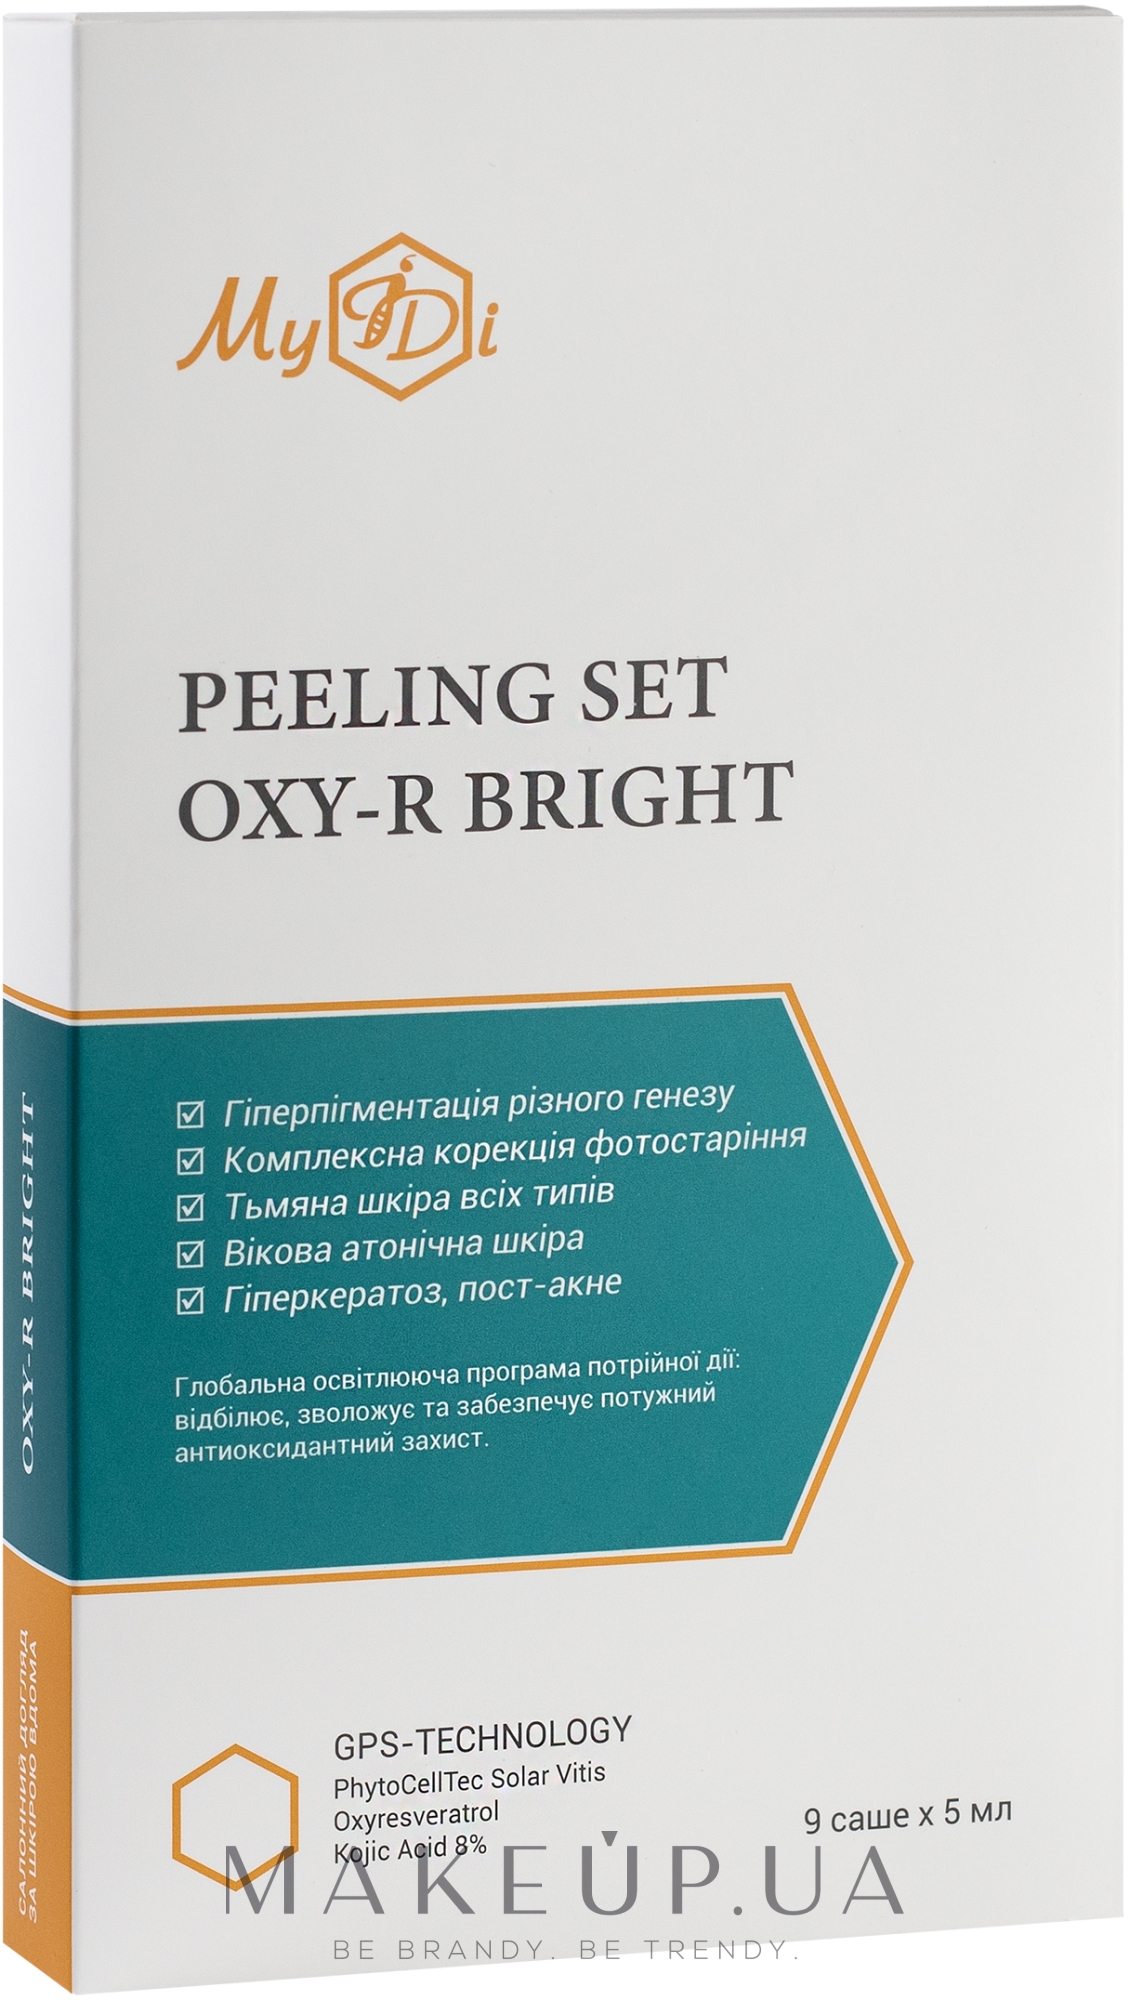 Набор для лица от пигментации "Эксперт сияния. Осветляющий пилинг" - MyIDi Oxy-R Bright Peeling Set  — фото 9x5ml